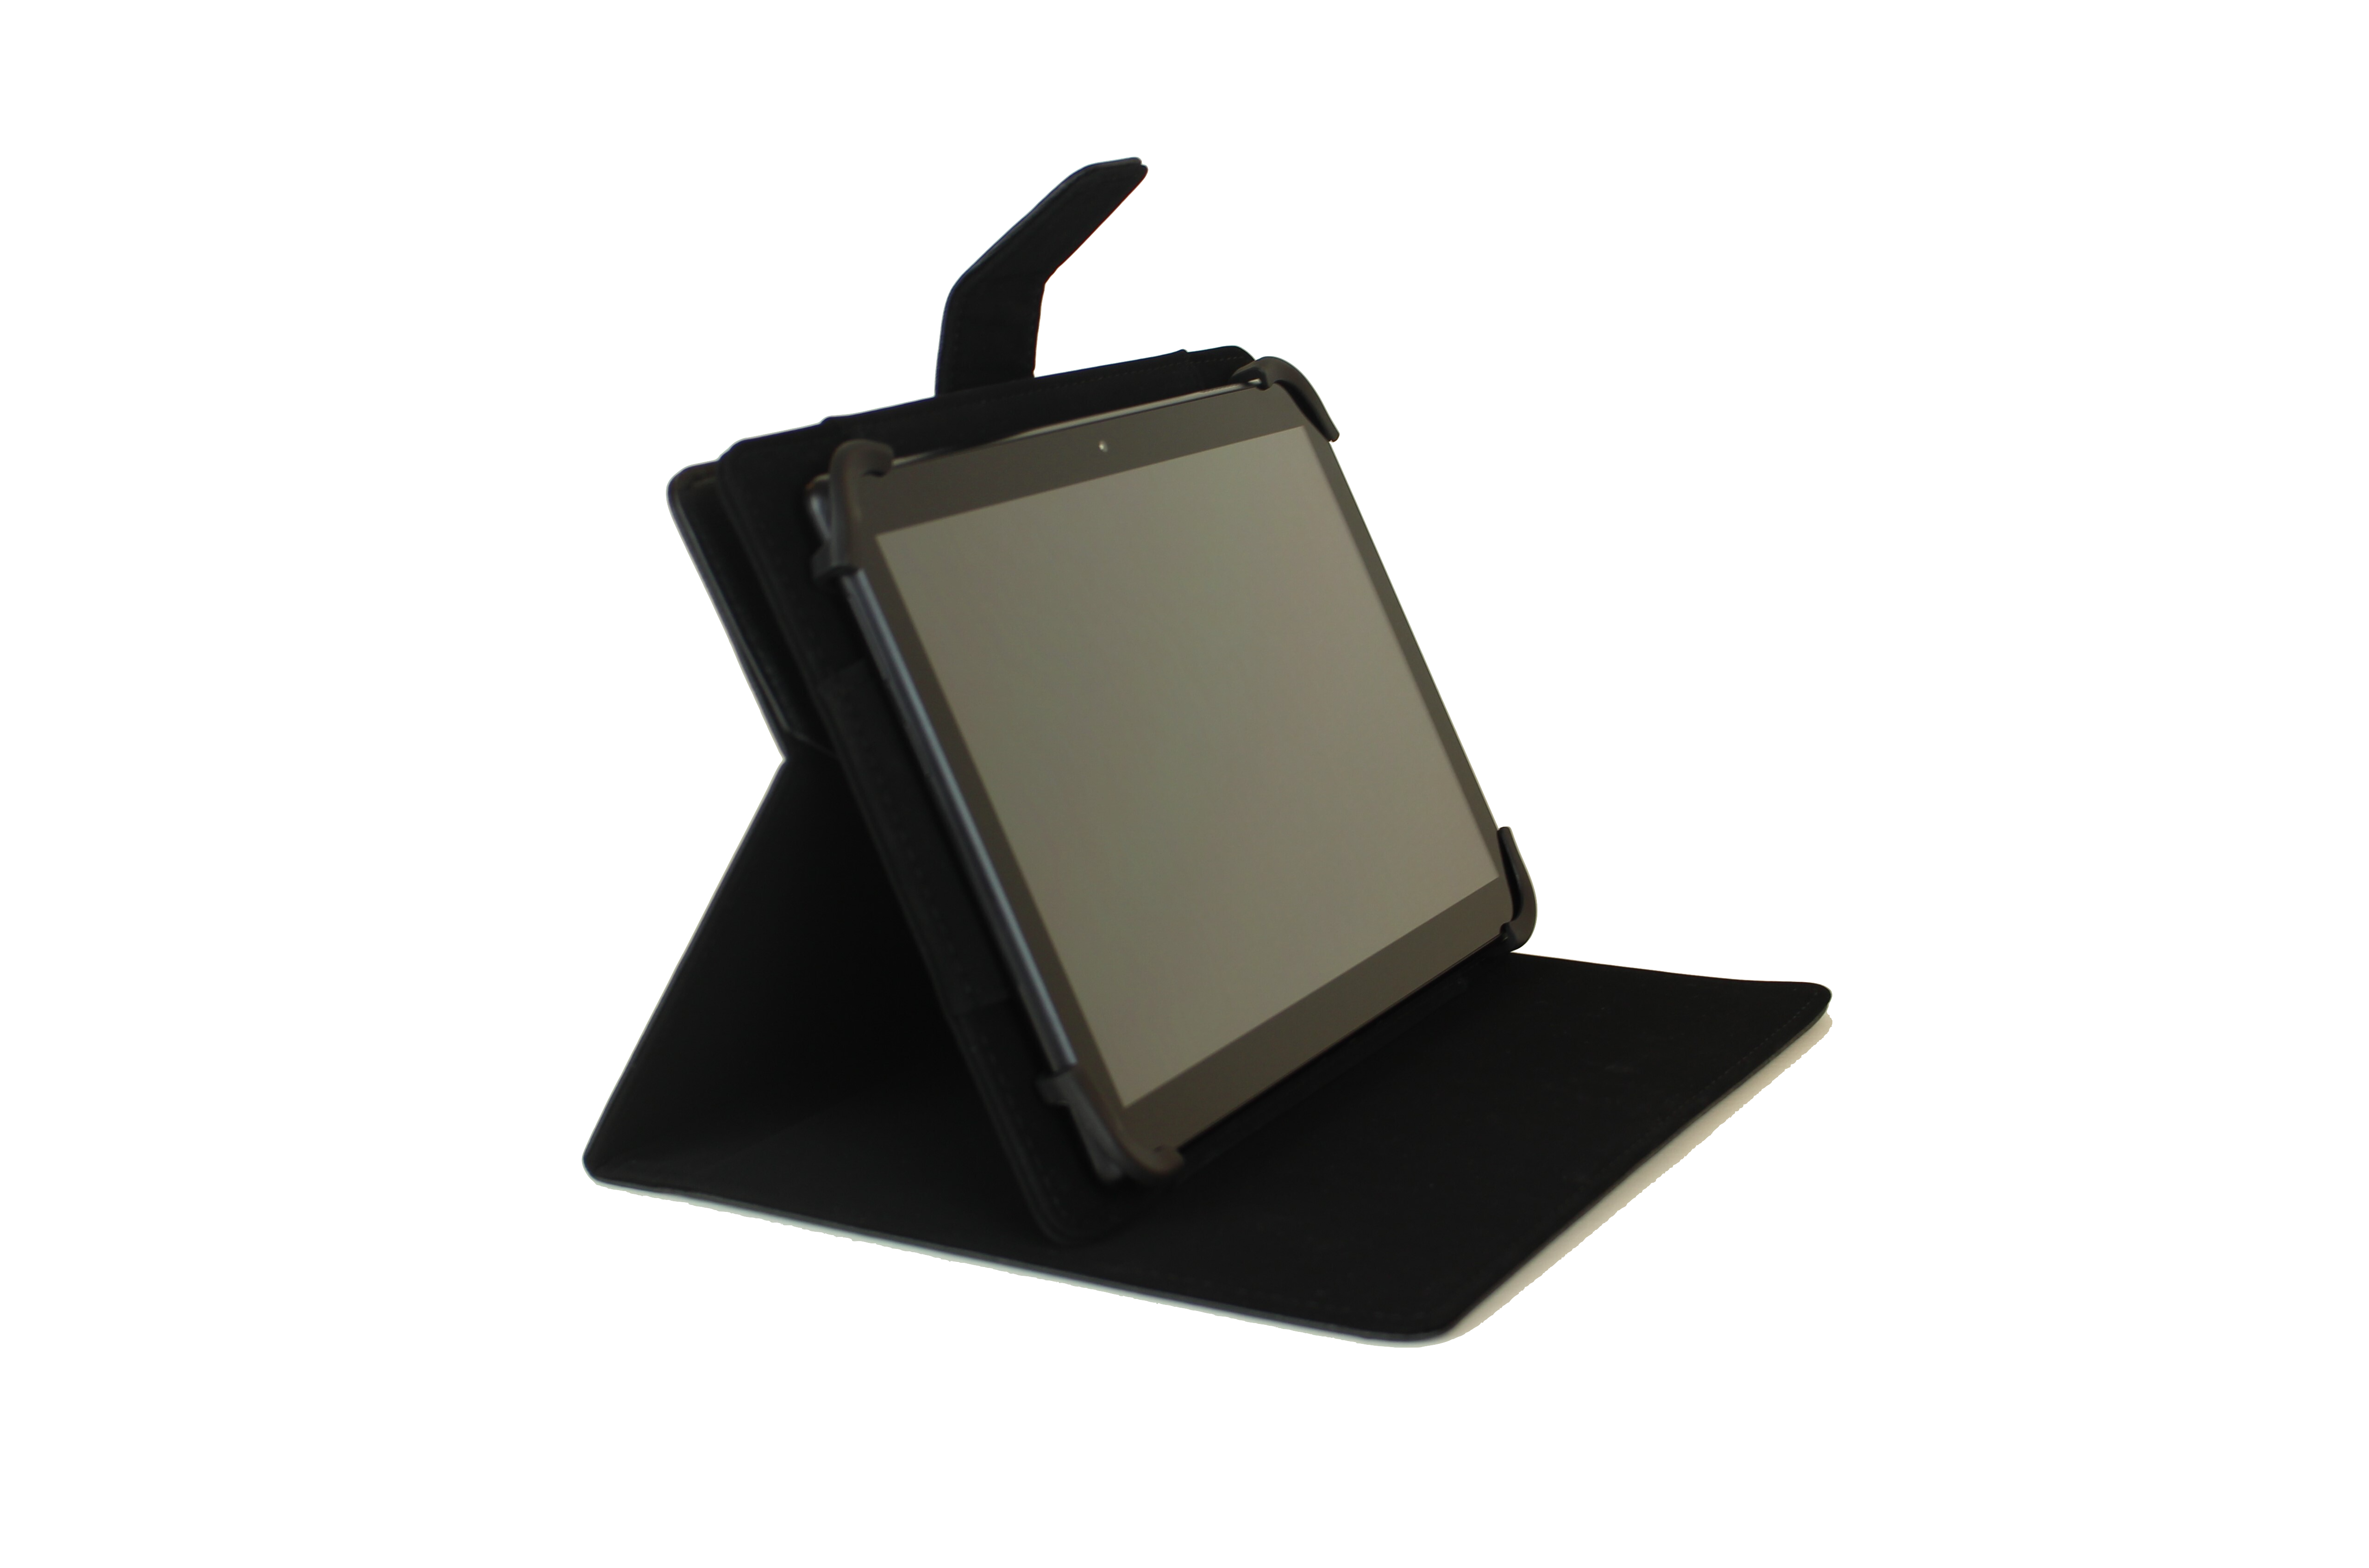 Posición horizontal de tablet en funda